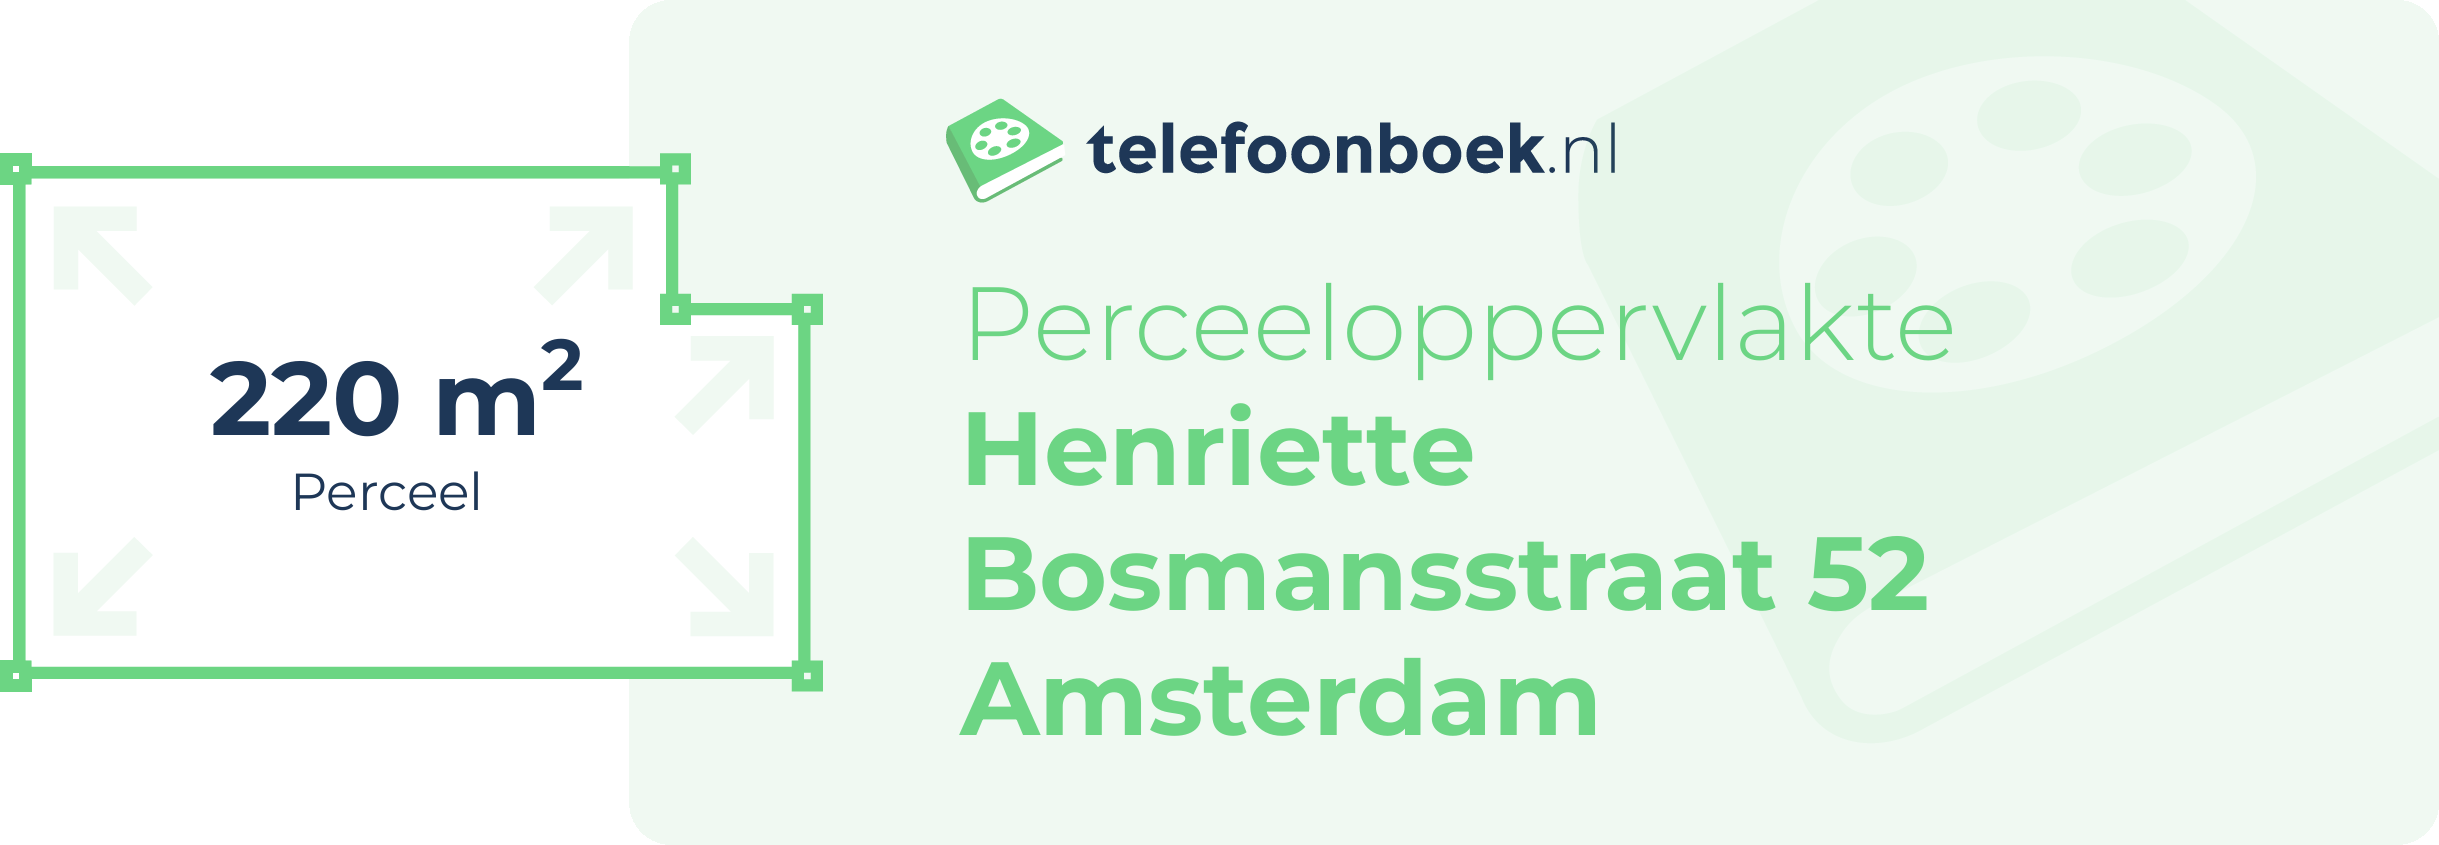 Perceeloppervlakte Henriette Bosmansstraat 52 Amsterdam